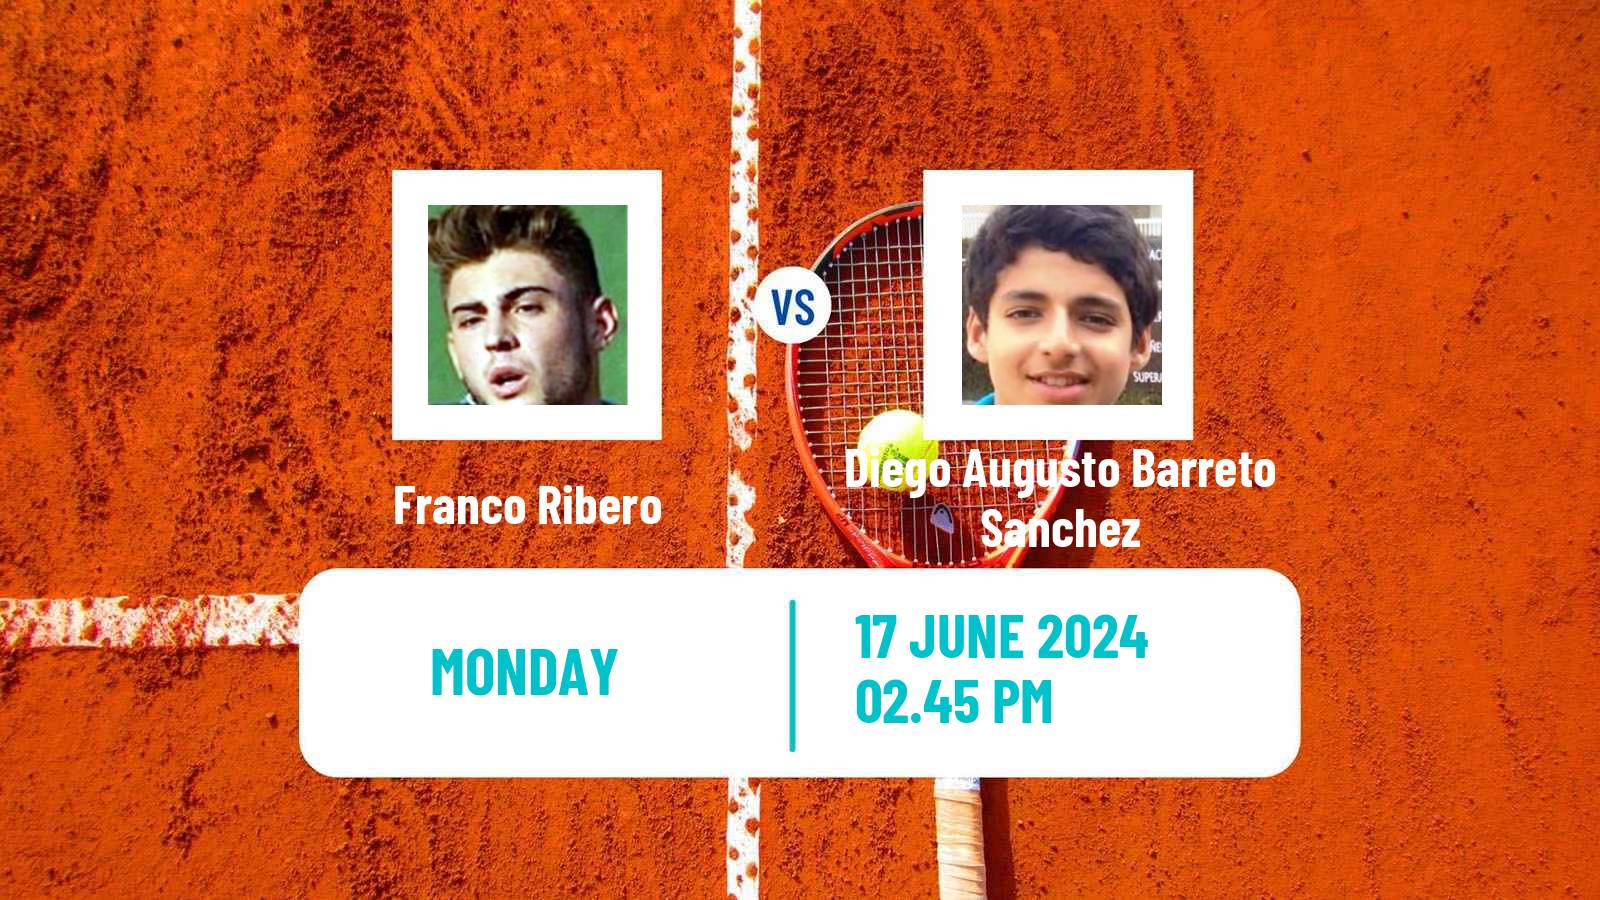 Tennis Santa Cruz 2 Challenger Men Franco Ribero - Diego Augusto Barreto Sanchez